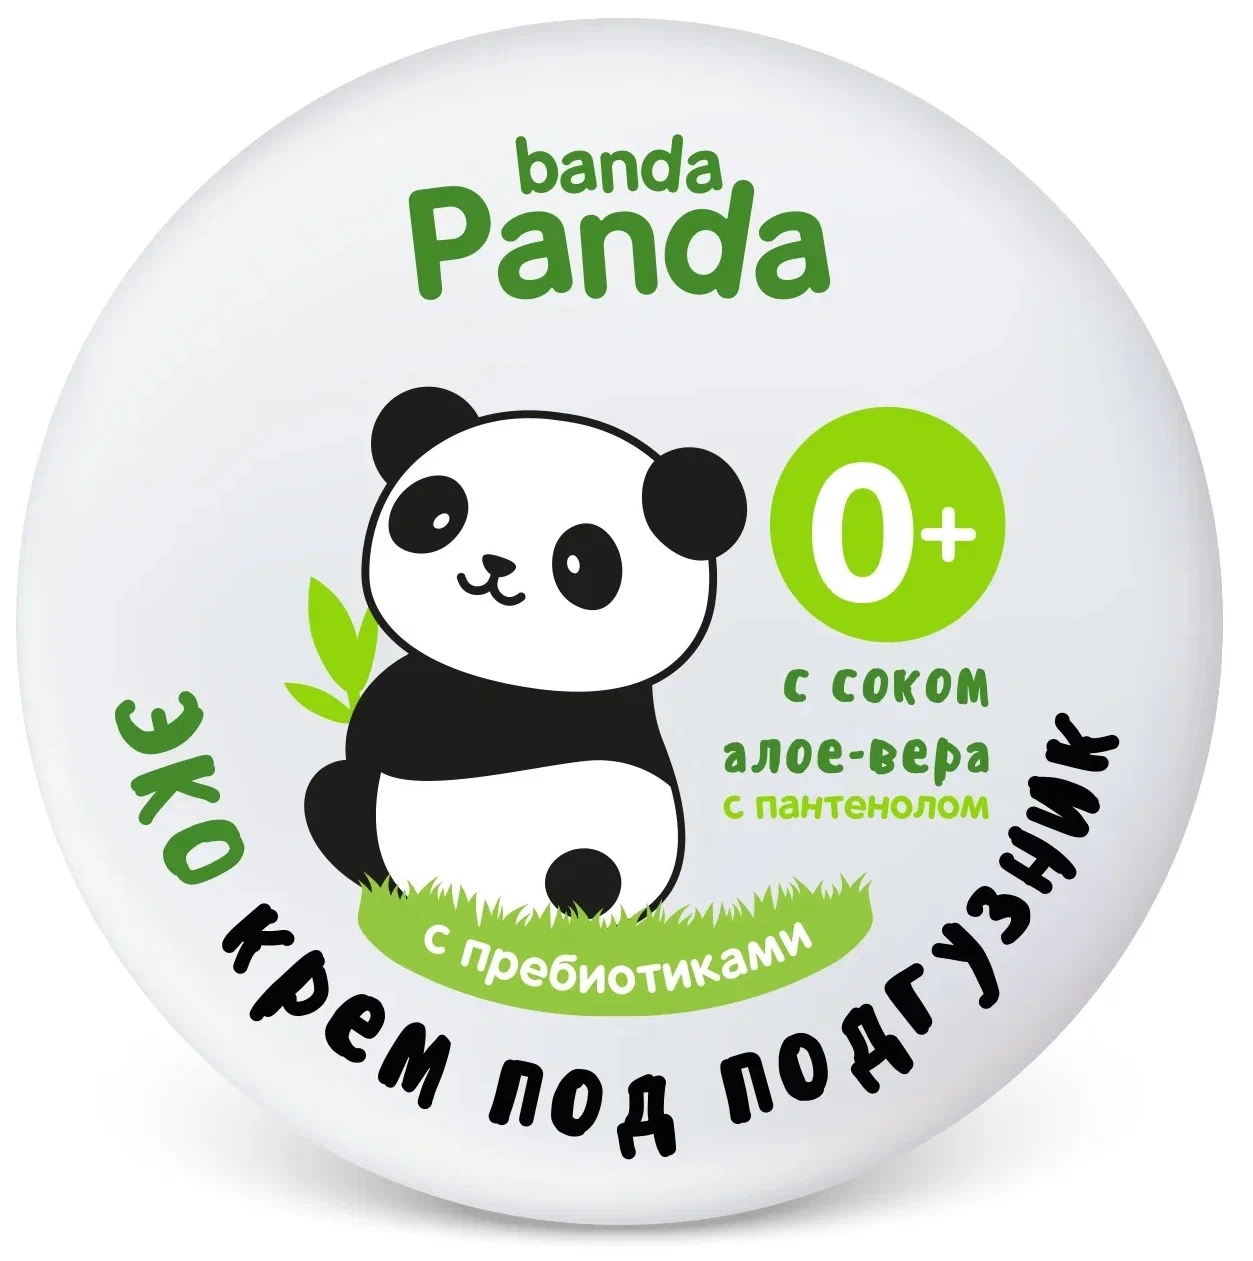 Крем Banda panda детский, под подгузник, 75 г